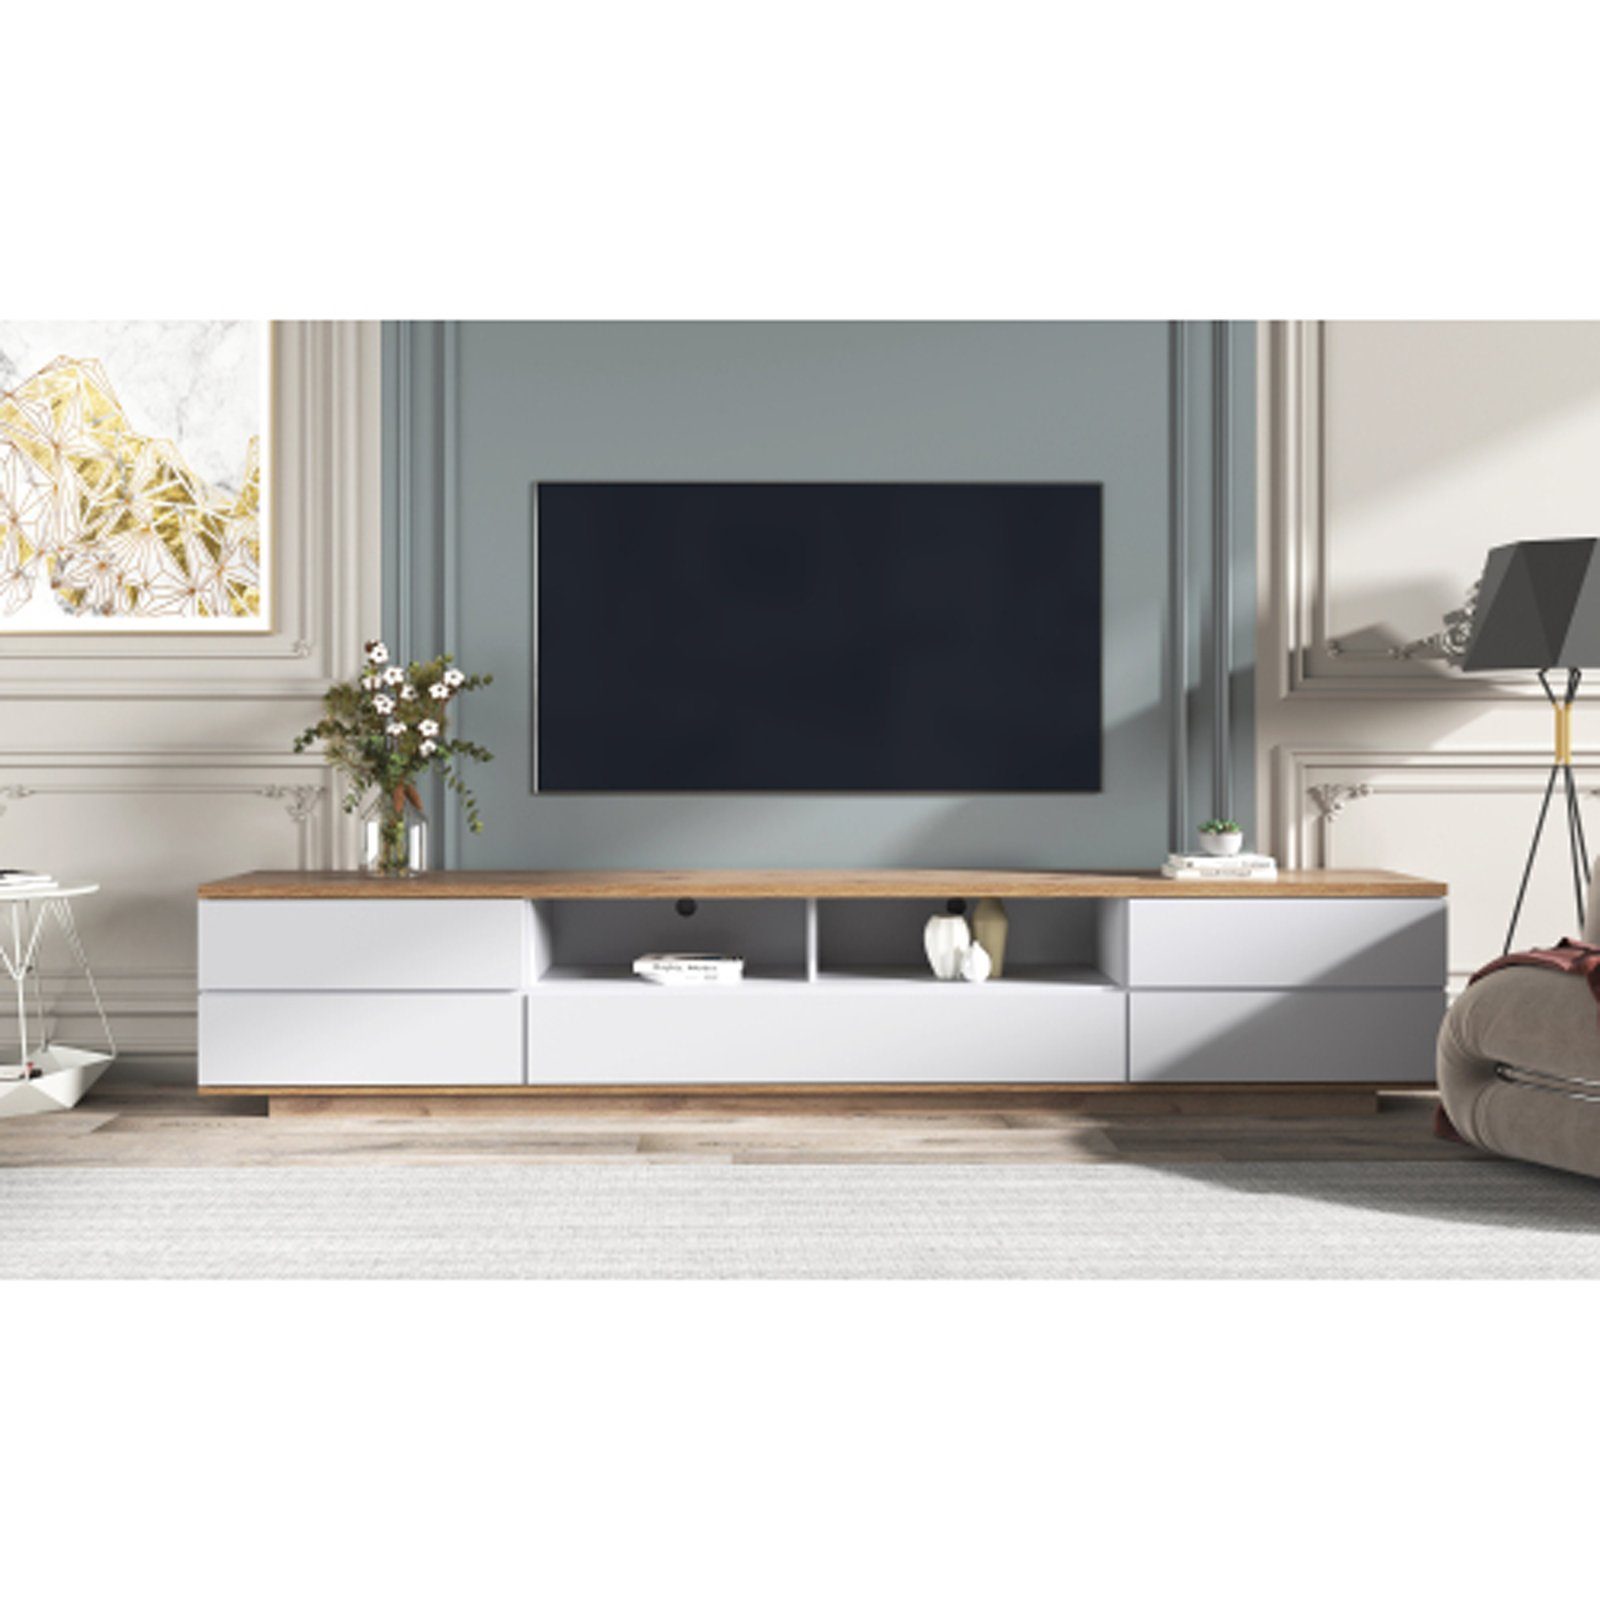 SEEZSSA TV-Schrank Moderner Colorblocking-TV-Schrank,TV-Schrank Gitterdesign, Weiße Schrank Hochglanzoberfläche mit Holzmaserung180X38X46CM